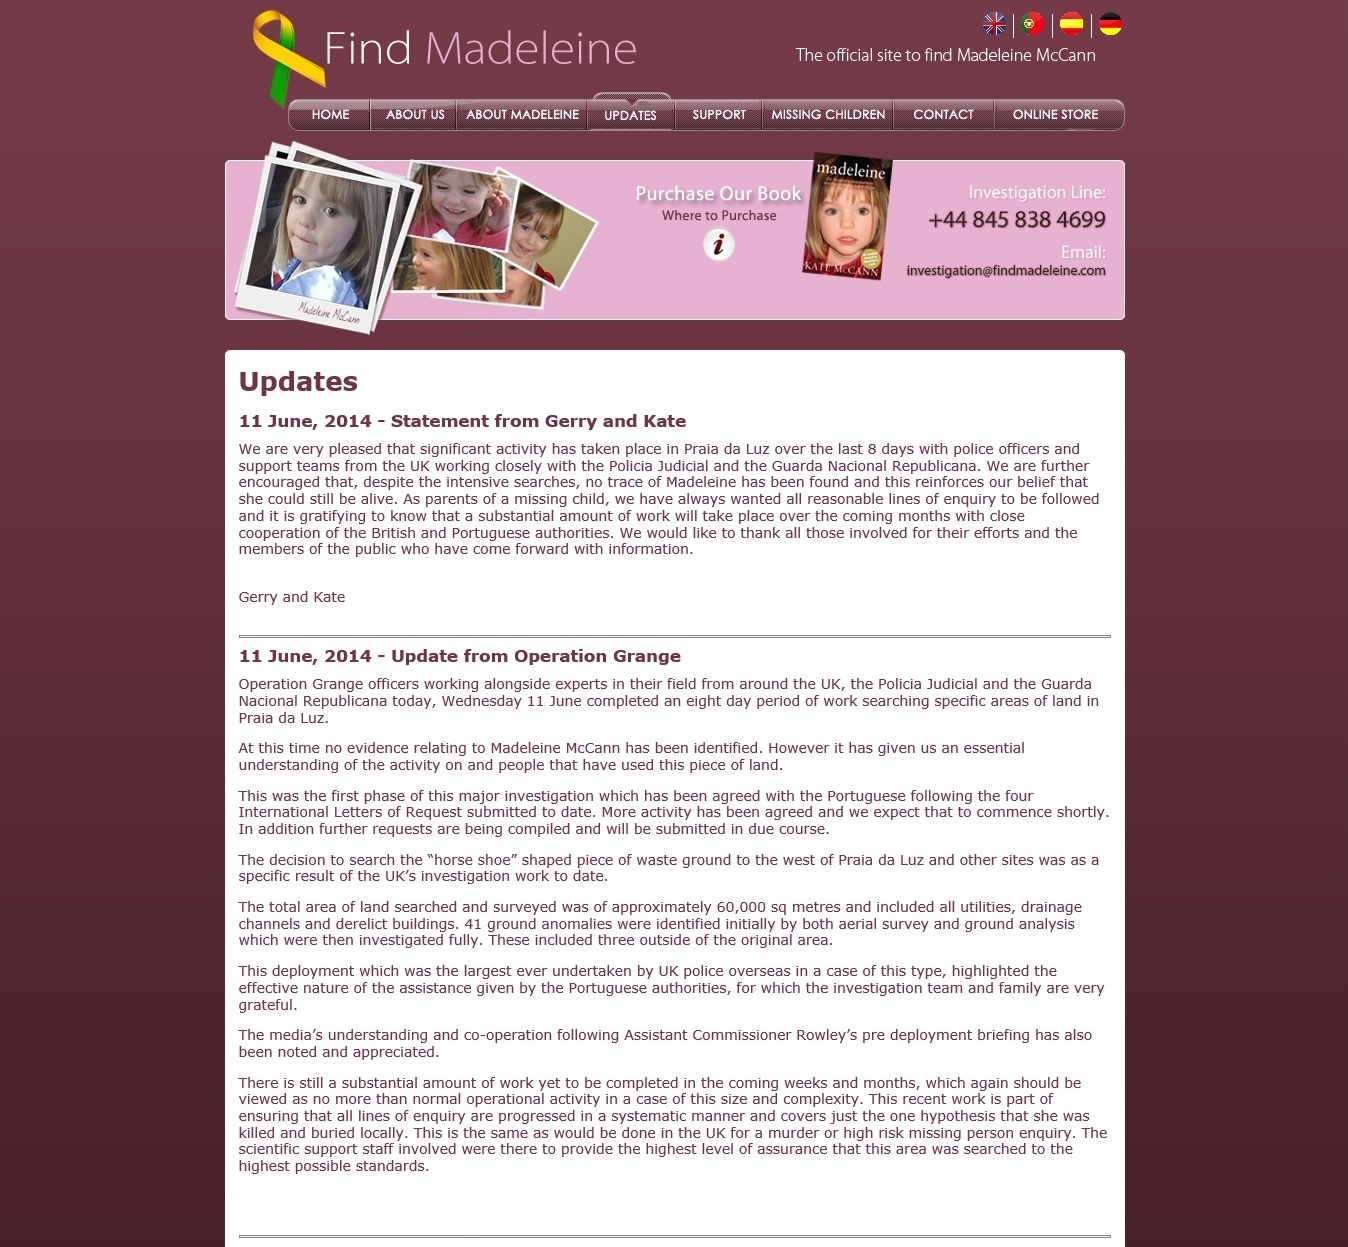 findmadeleine.com update, placed online12 June 2104